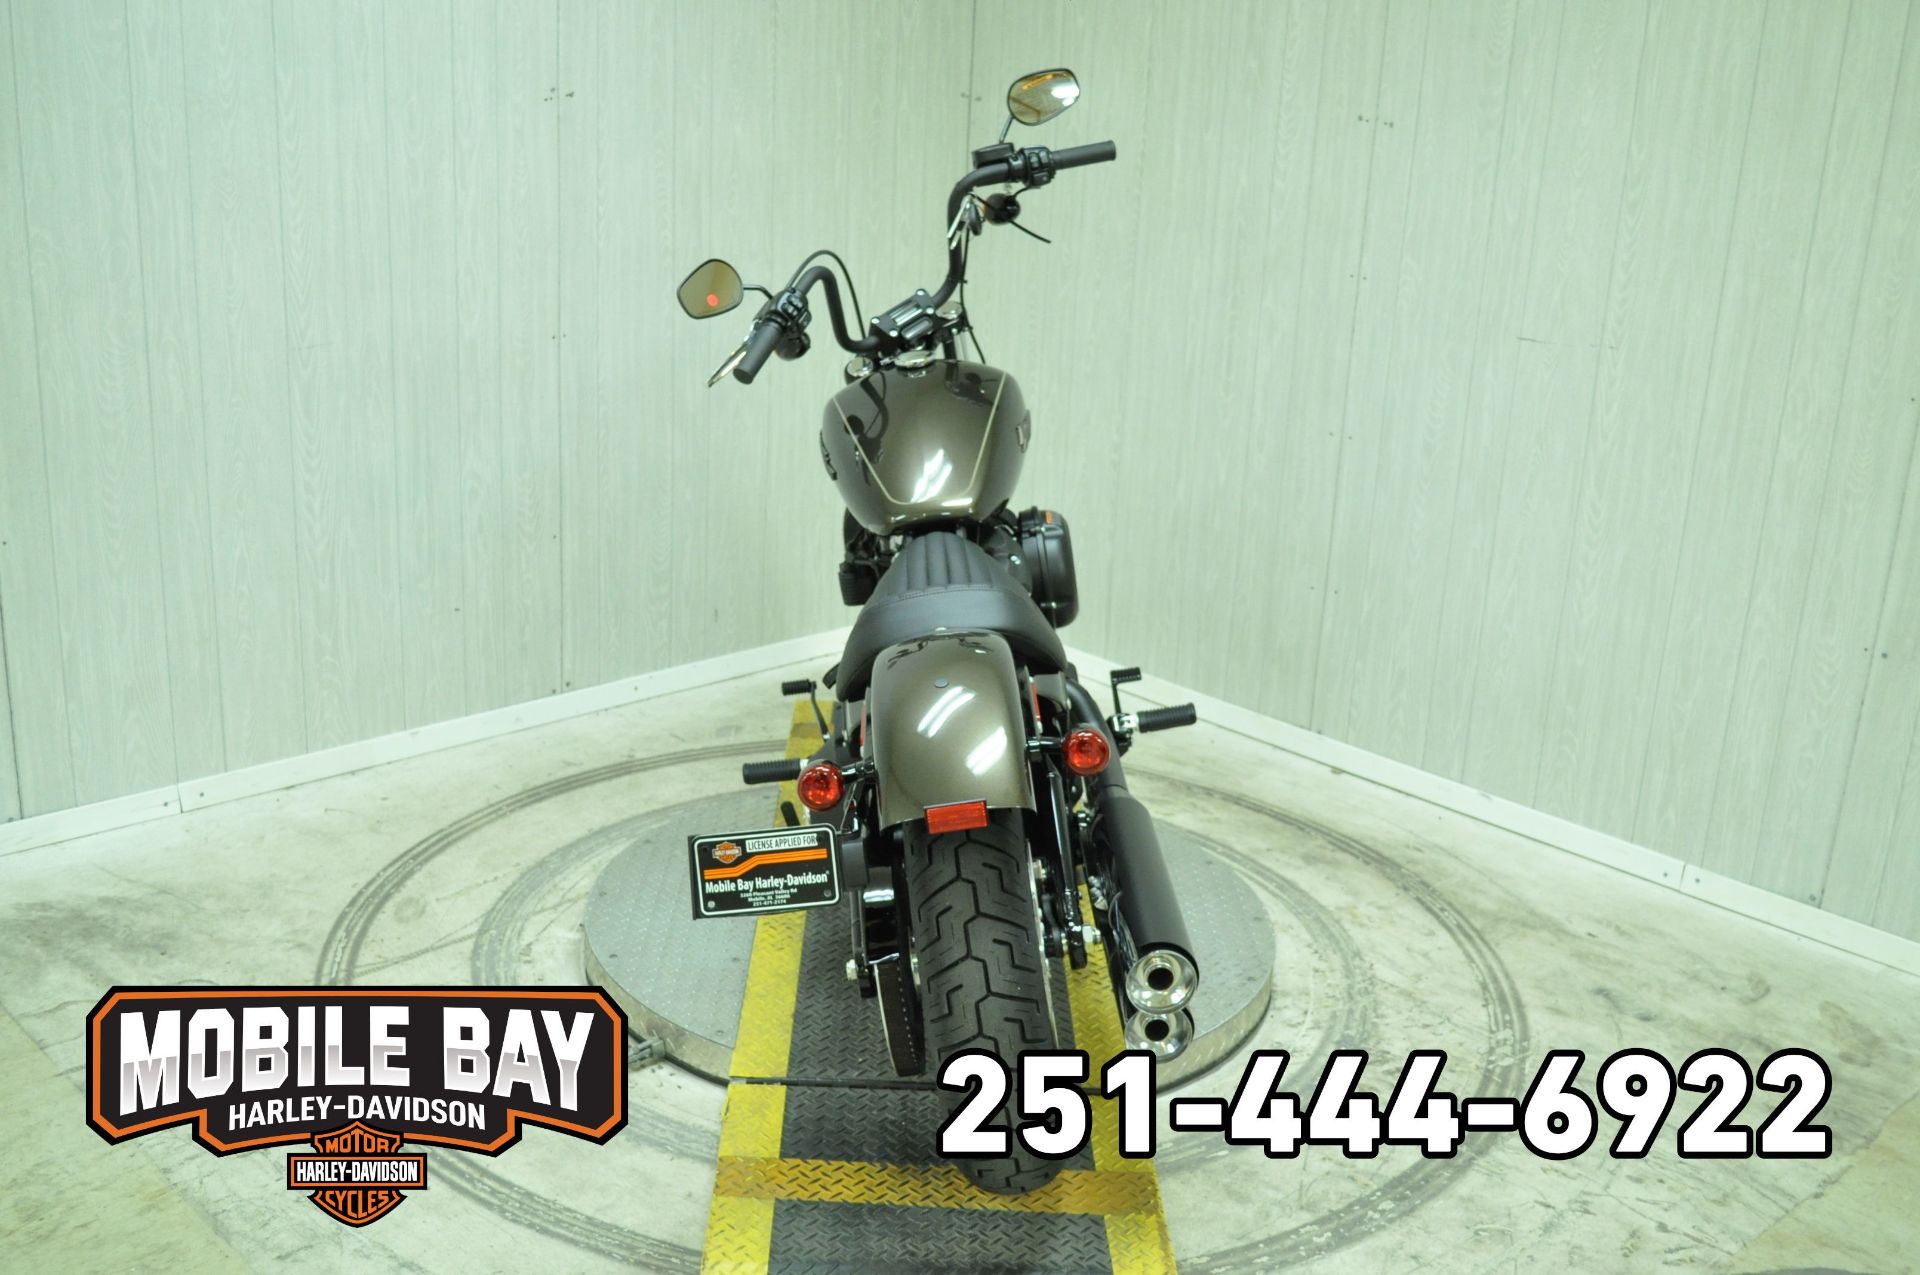 2020 Harley-Davidson Street Bob® in Mobile, Alabama - Photo 6